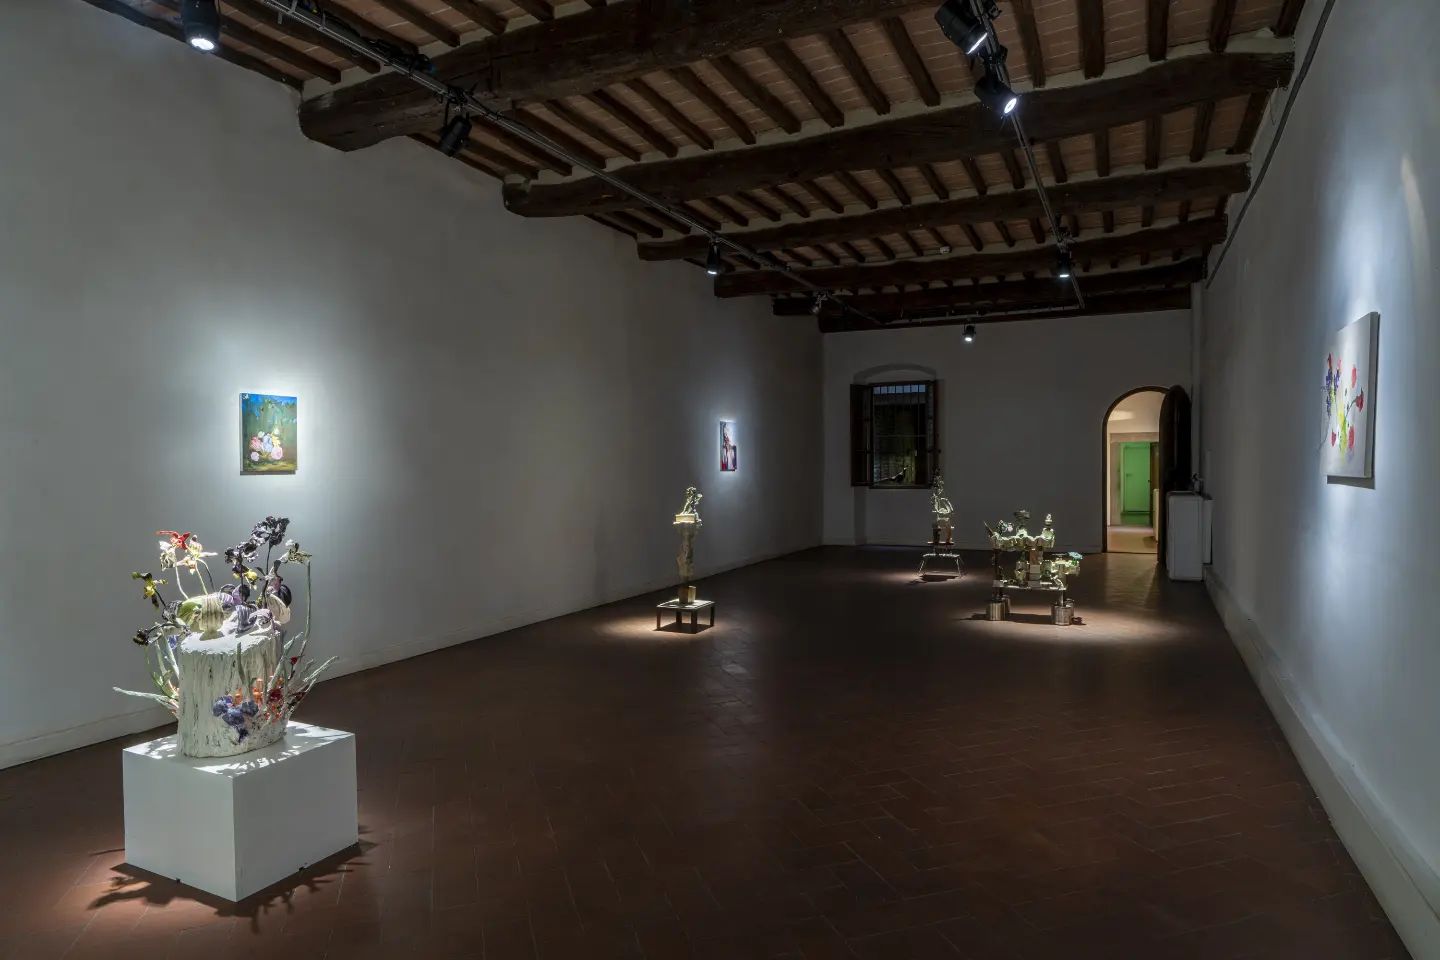 Casa Masaccio - Centro per l'Arte Contemporanea, San Giovanni Valdarno